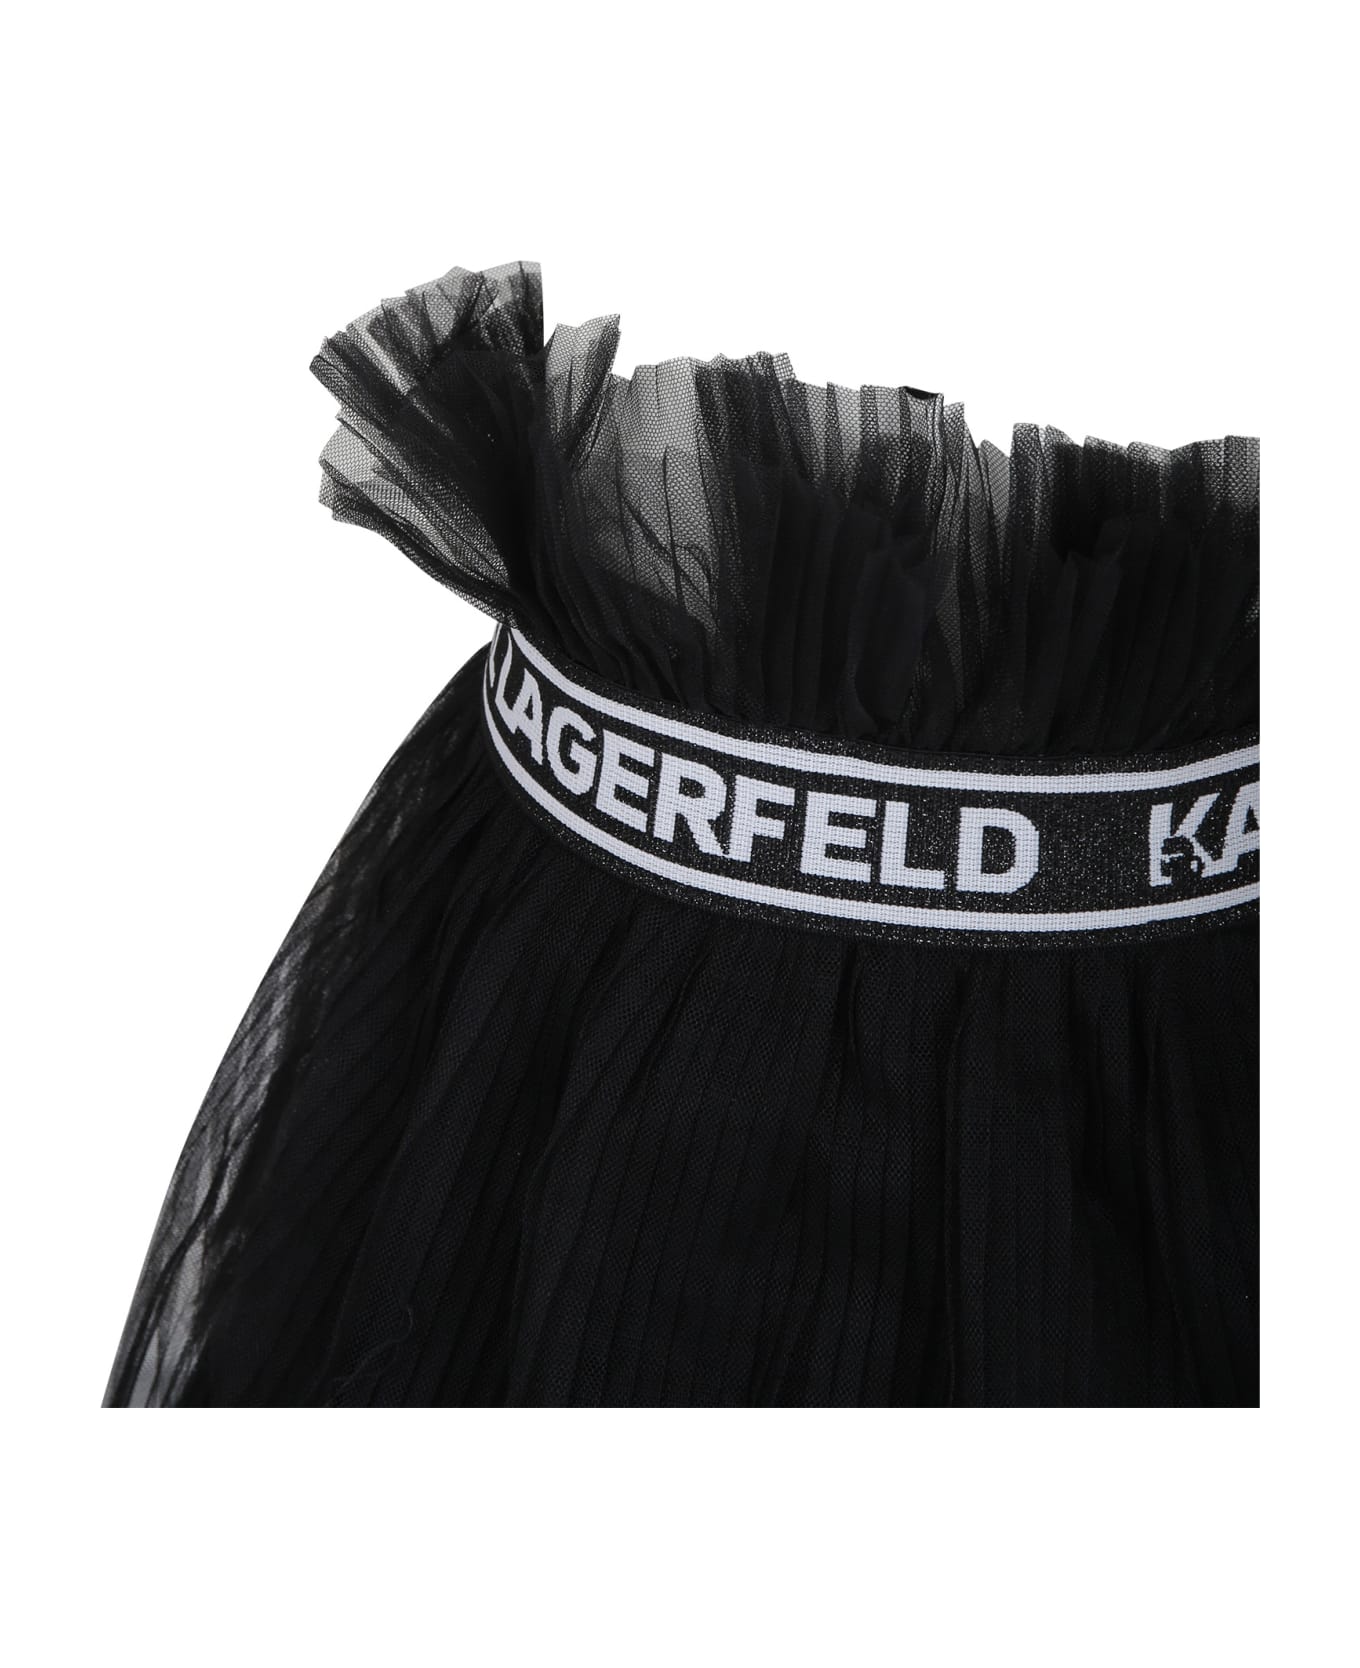 Karl Lagerfeld Kids Black Fuchsia Skirt For Girl - Black